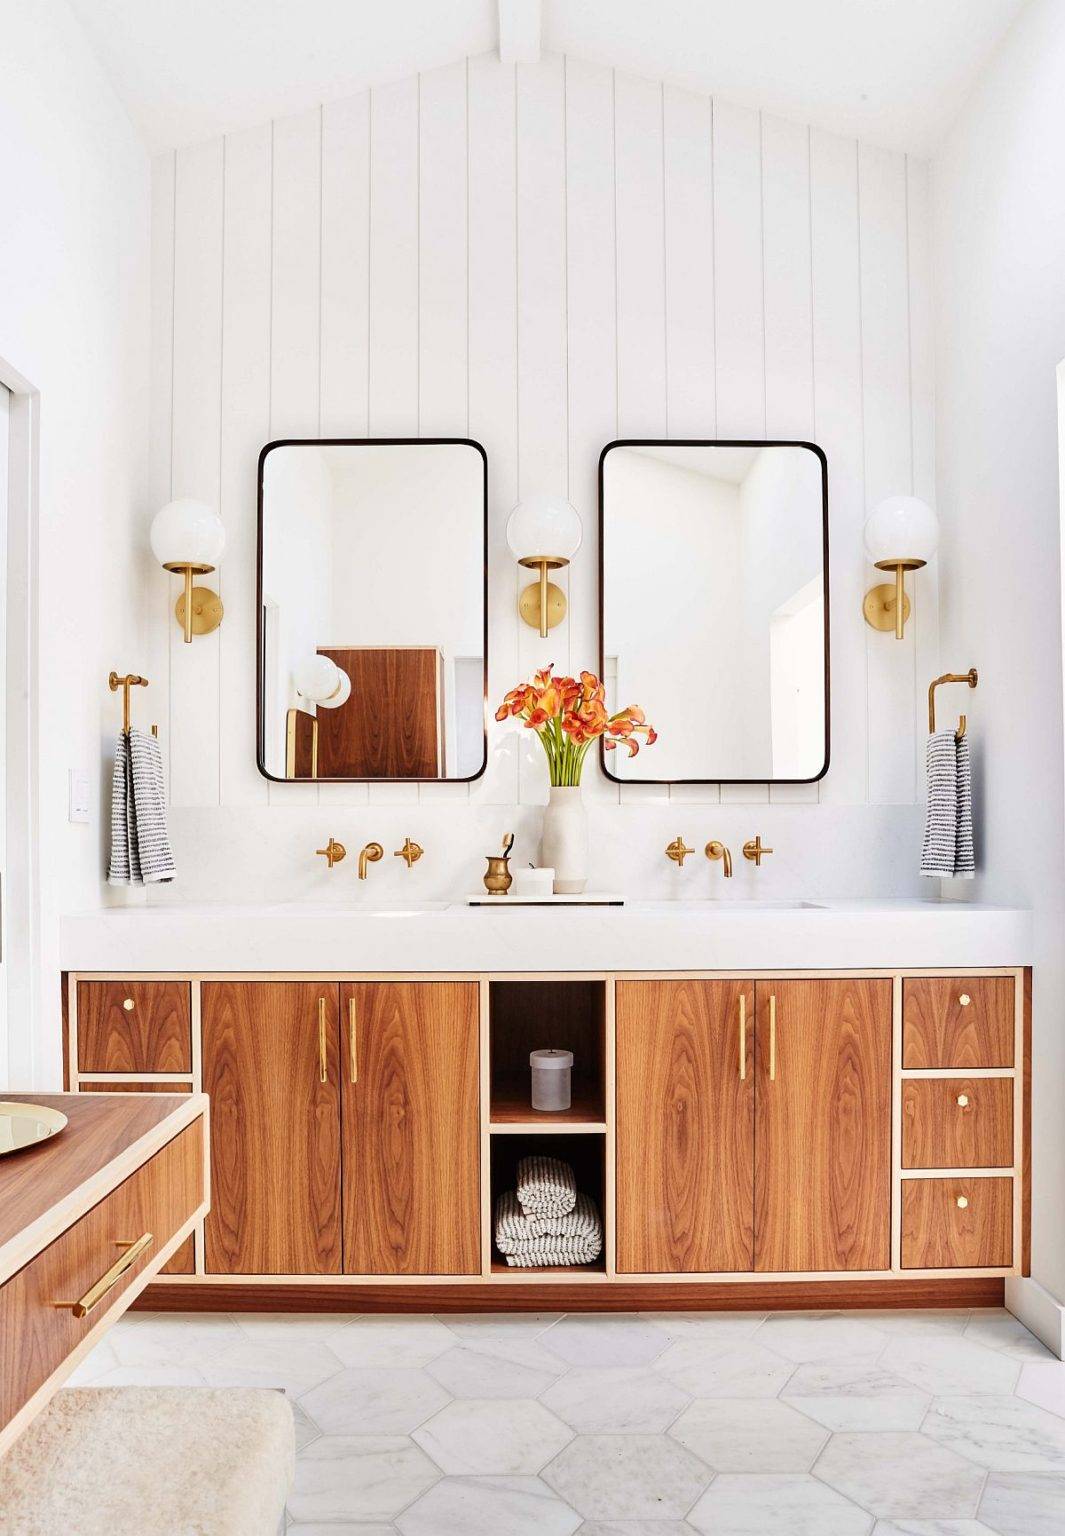 Màu trắng và chất liệu gỗ kết hợp ăn ý trong phòng tắm hiện đại với những nét Scandinavian chấm phá.